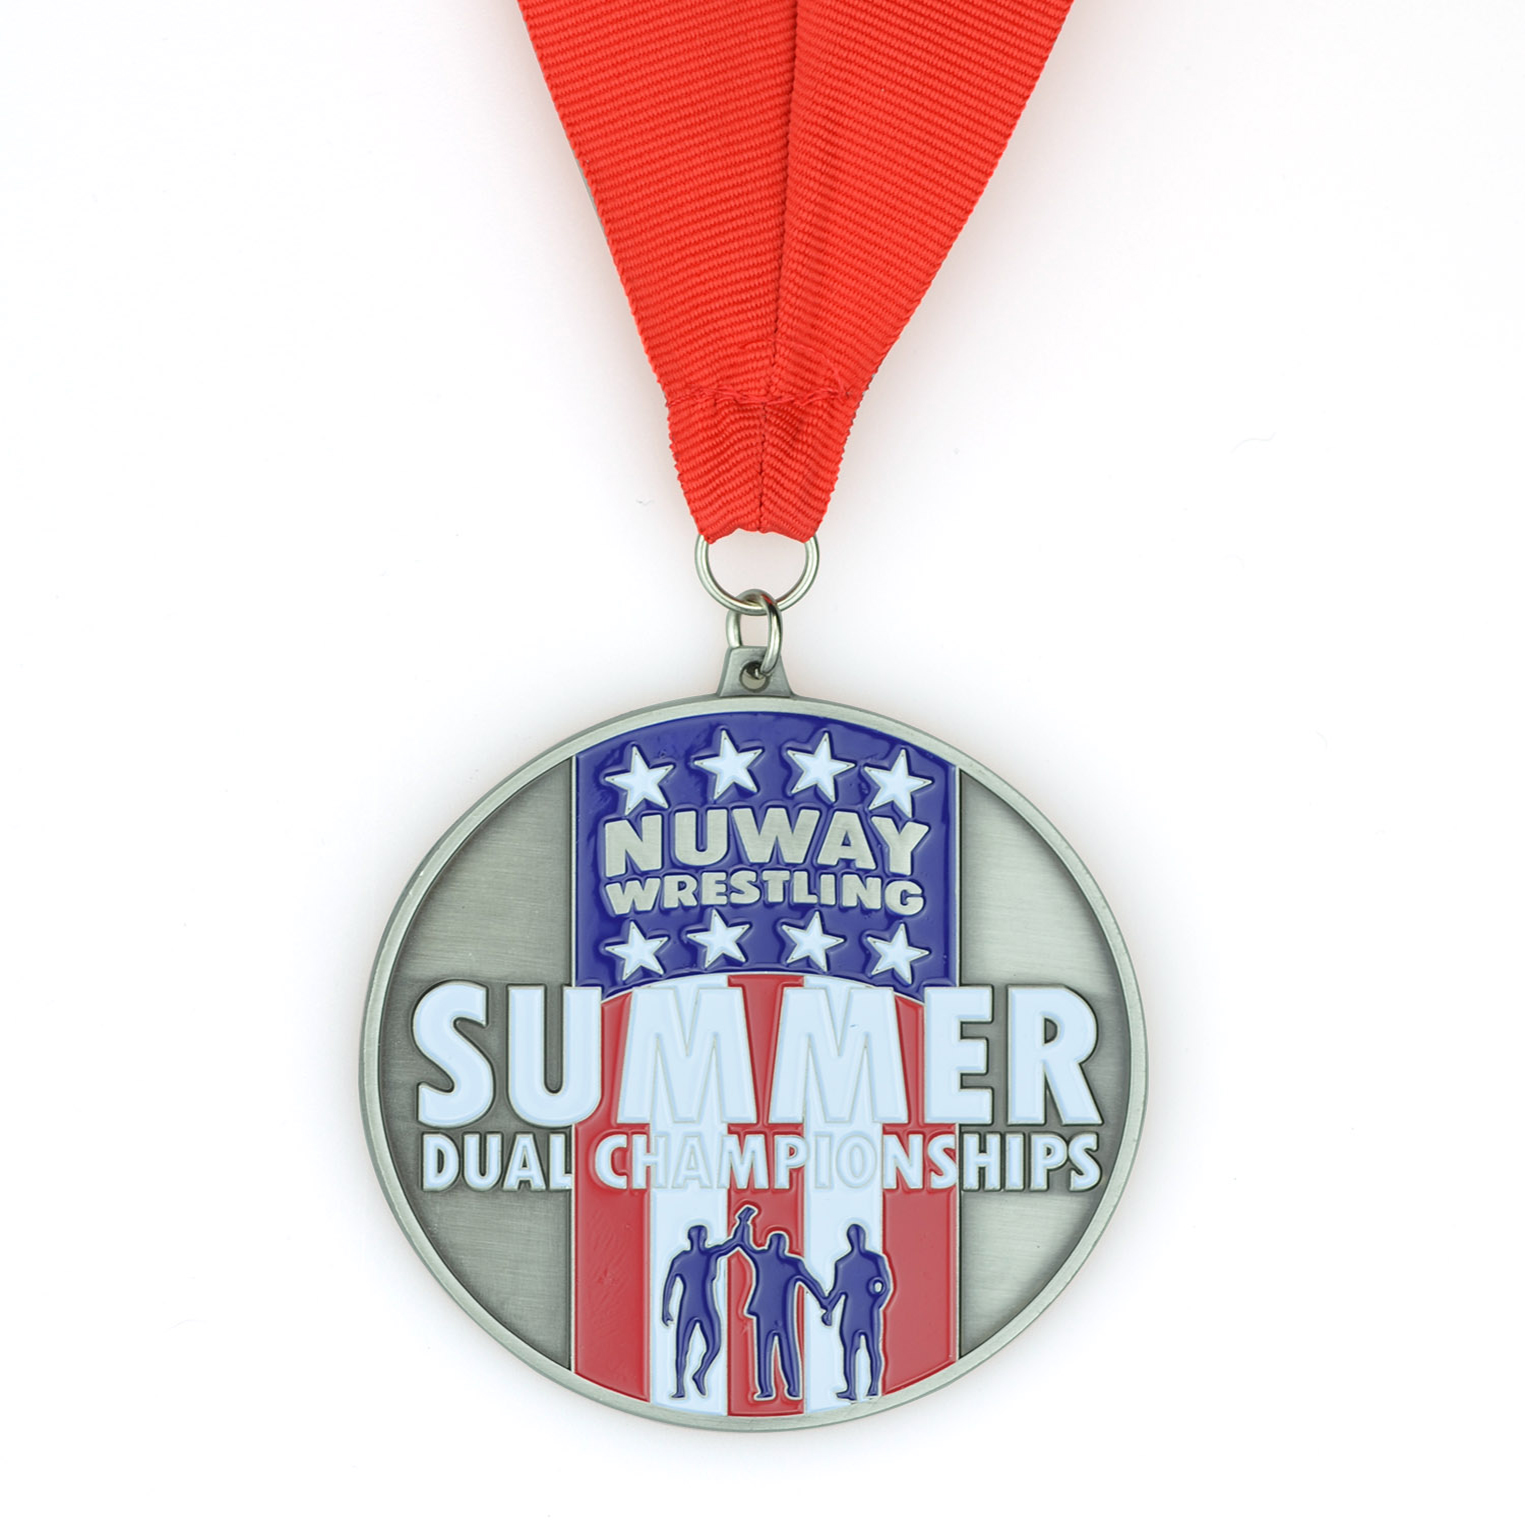 Hoge kwaliteit souvenir zinklegering aangepast logo metalen zomer dubbele kampioenschappen worstelen judo taekwondo karate marathon hardlopen sportmedaille (3)